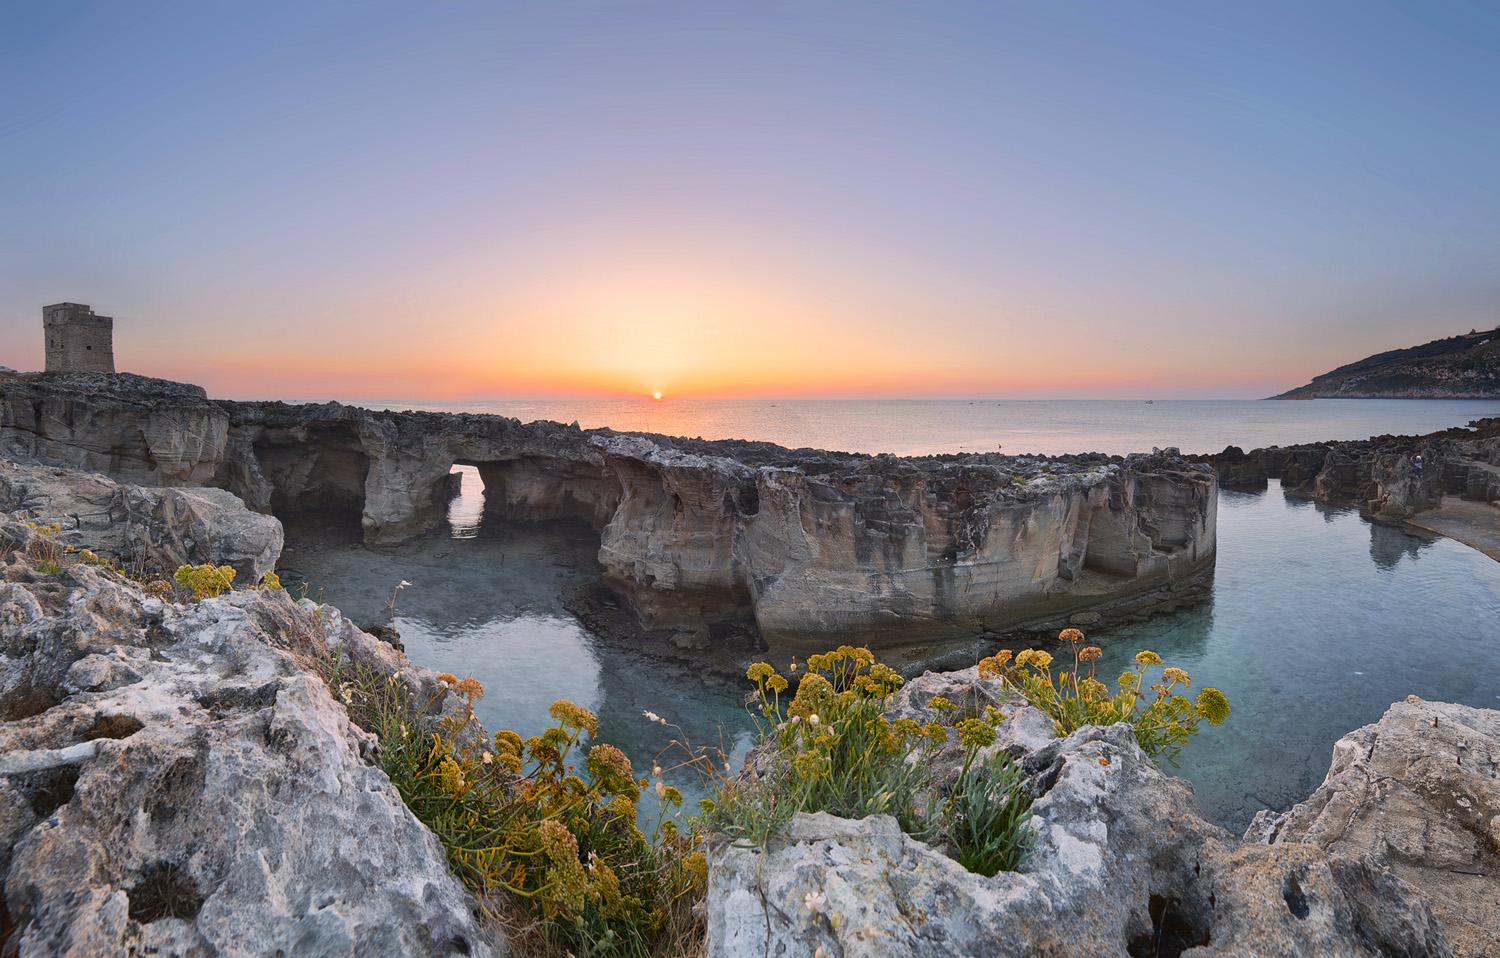 Parco naturale regionale Costa Otranto (Foto di Maurizio Biasco)